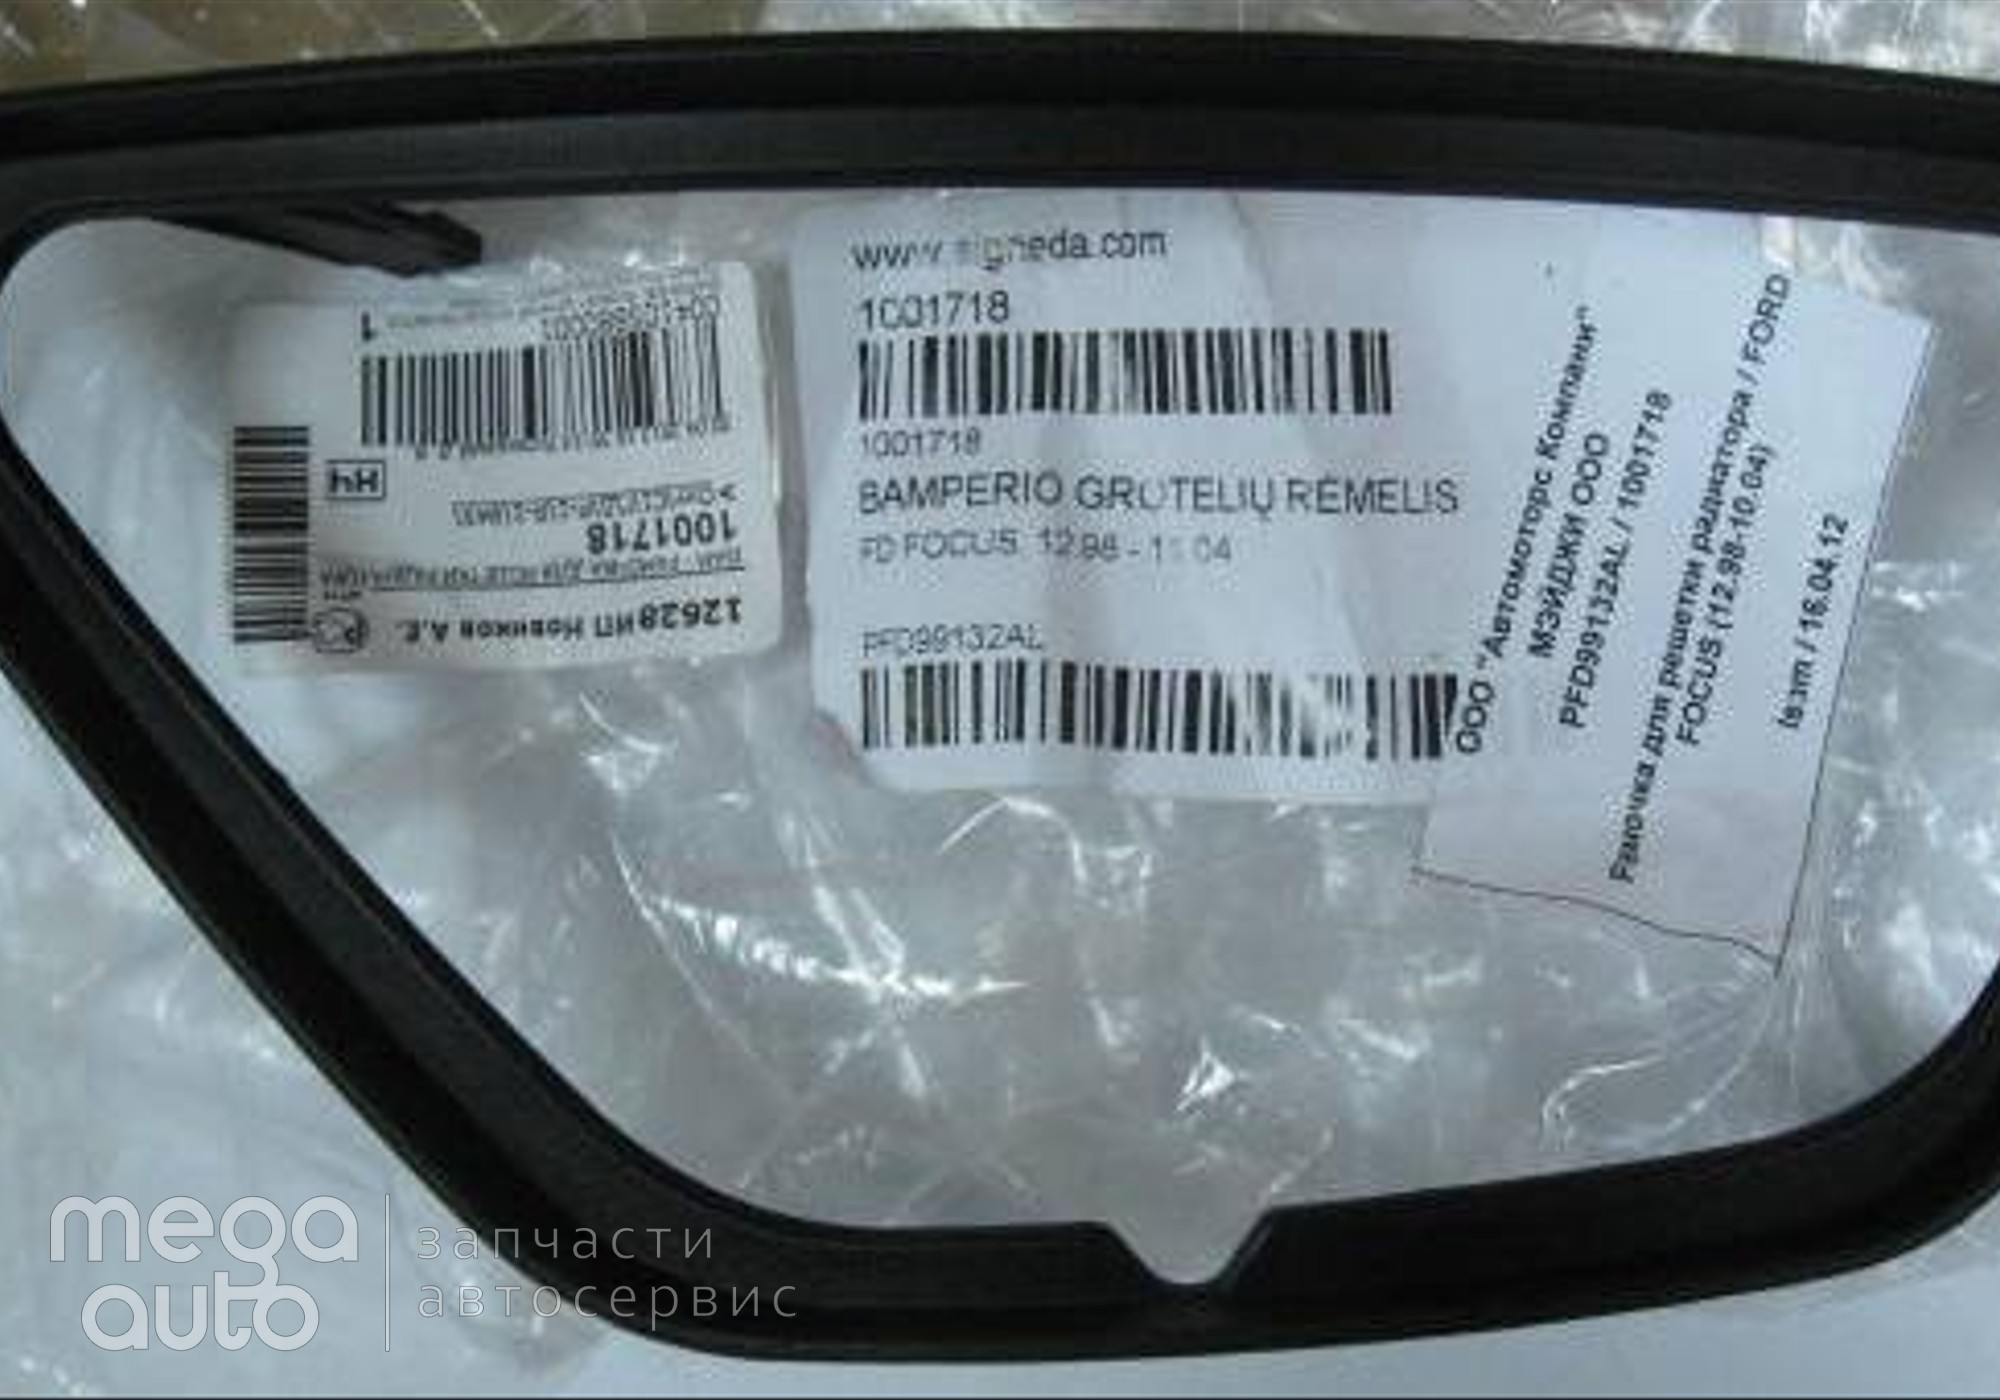 1208011 Рамочка решетки в бампер противотуманной фары форд фокус(ISAM) для Mazda 323